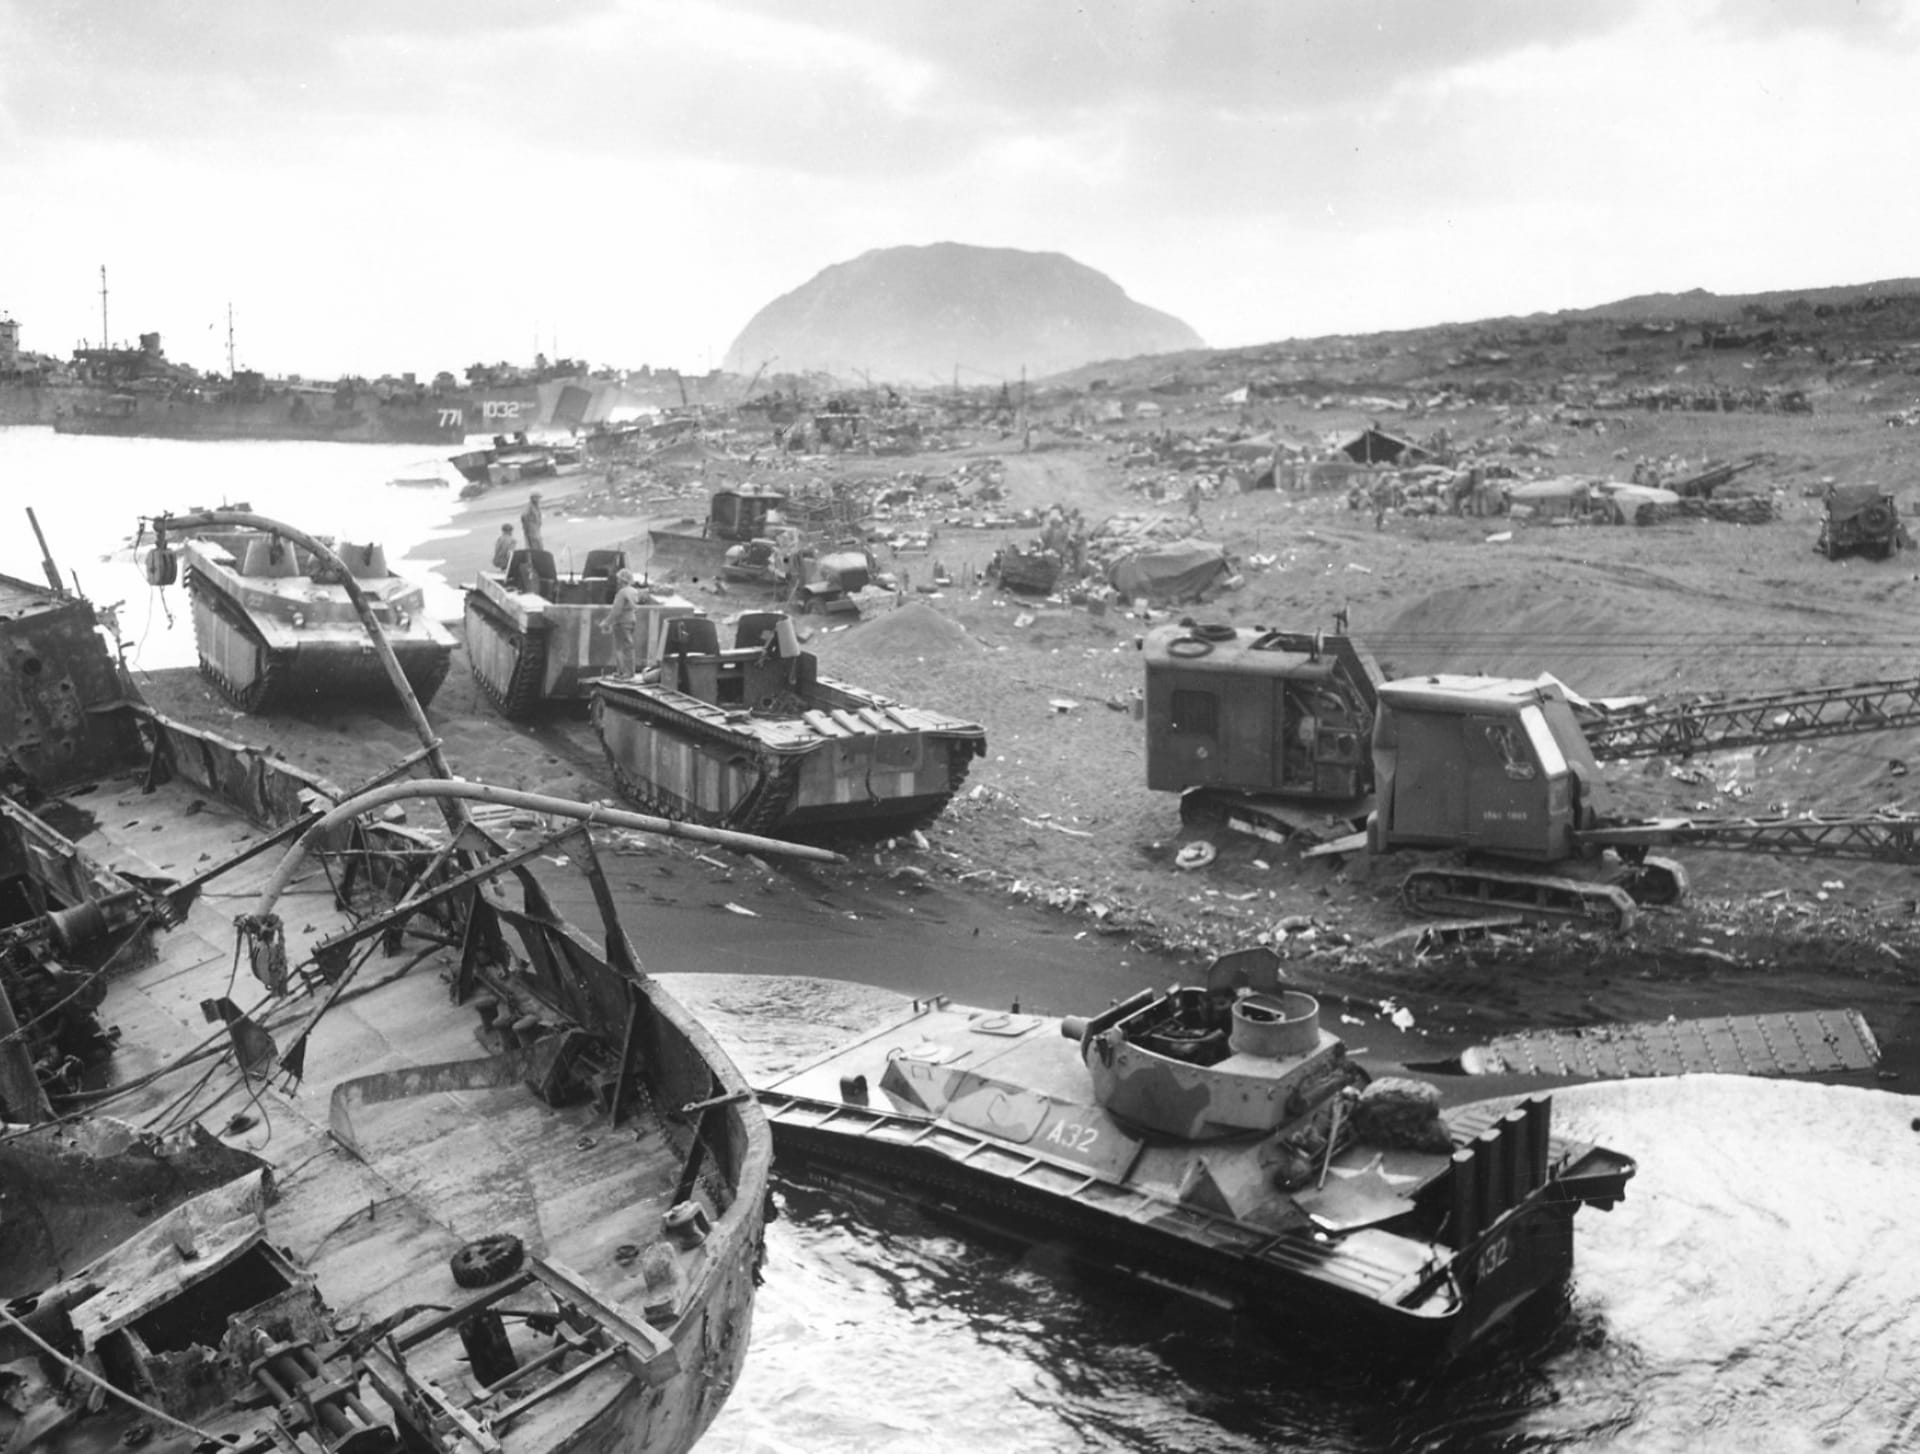 Battle Of Iwo Jima at 1152 x 864 size wallpapers HD quality